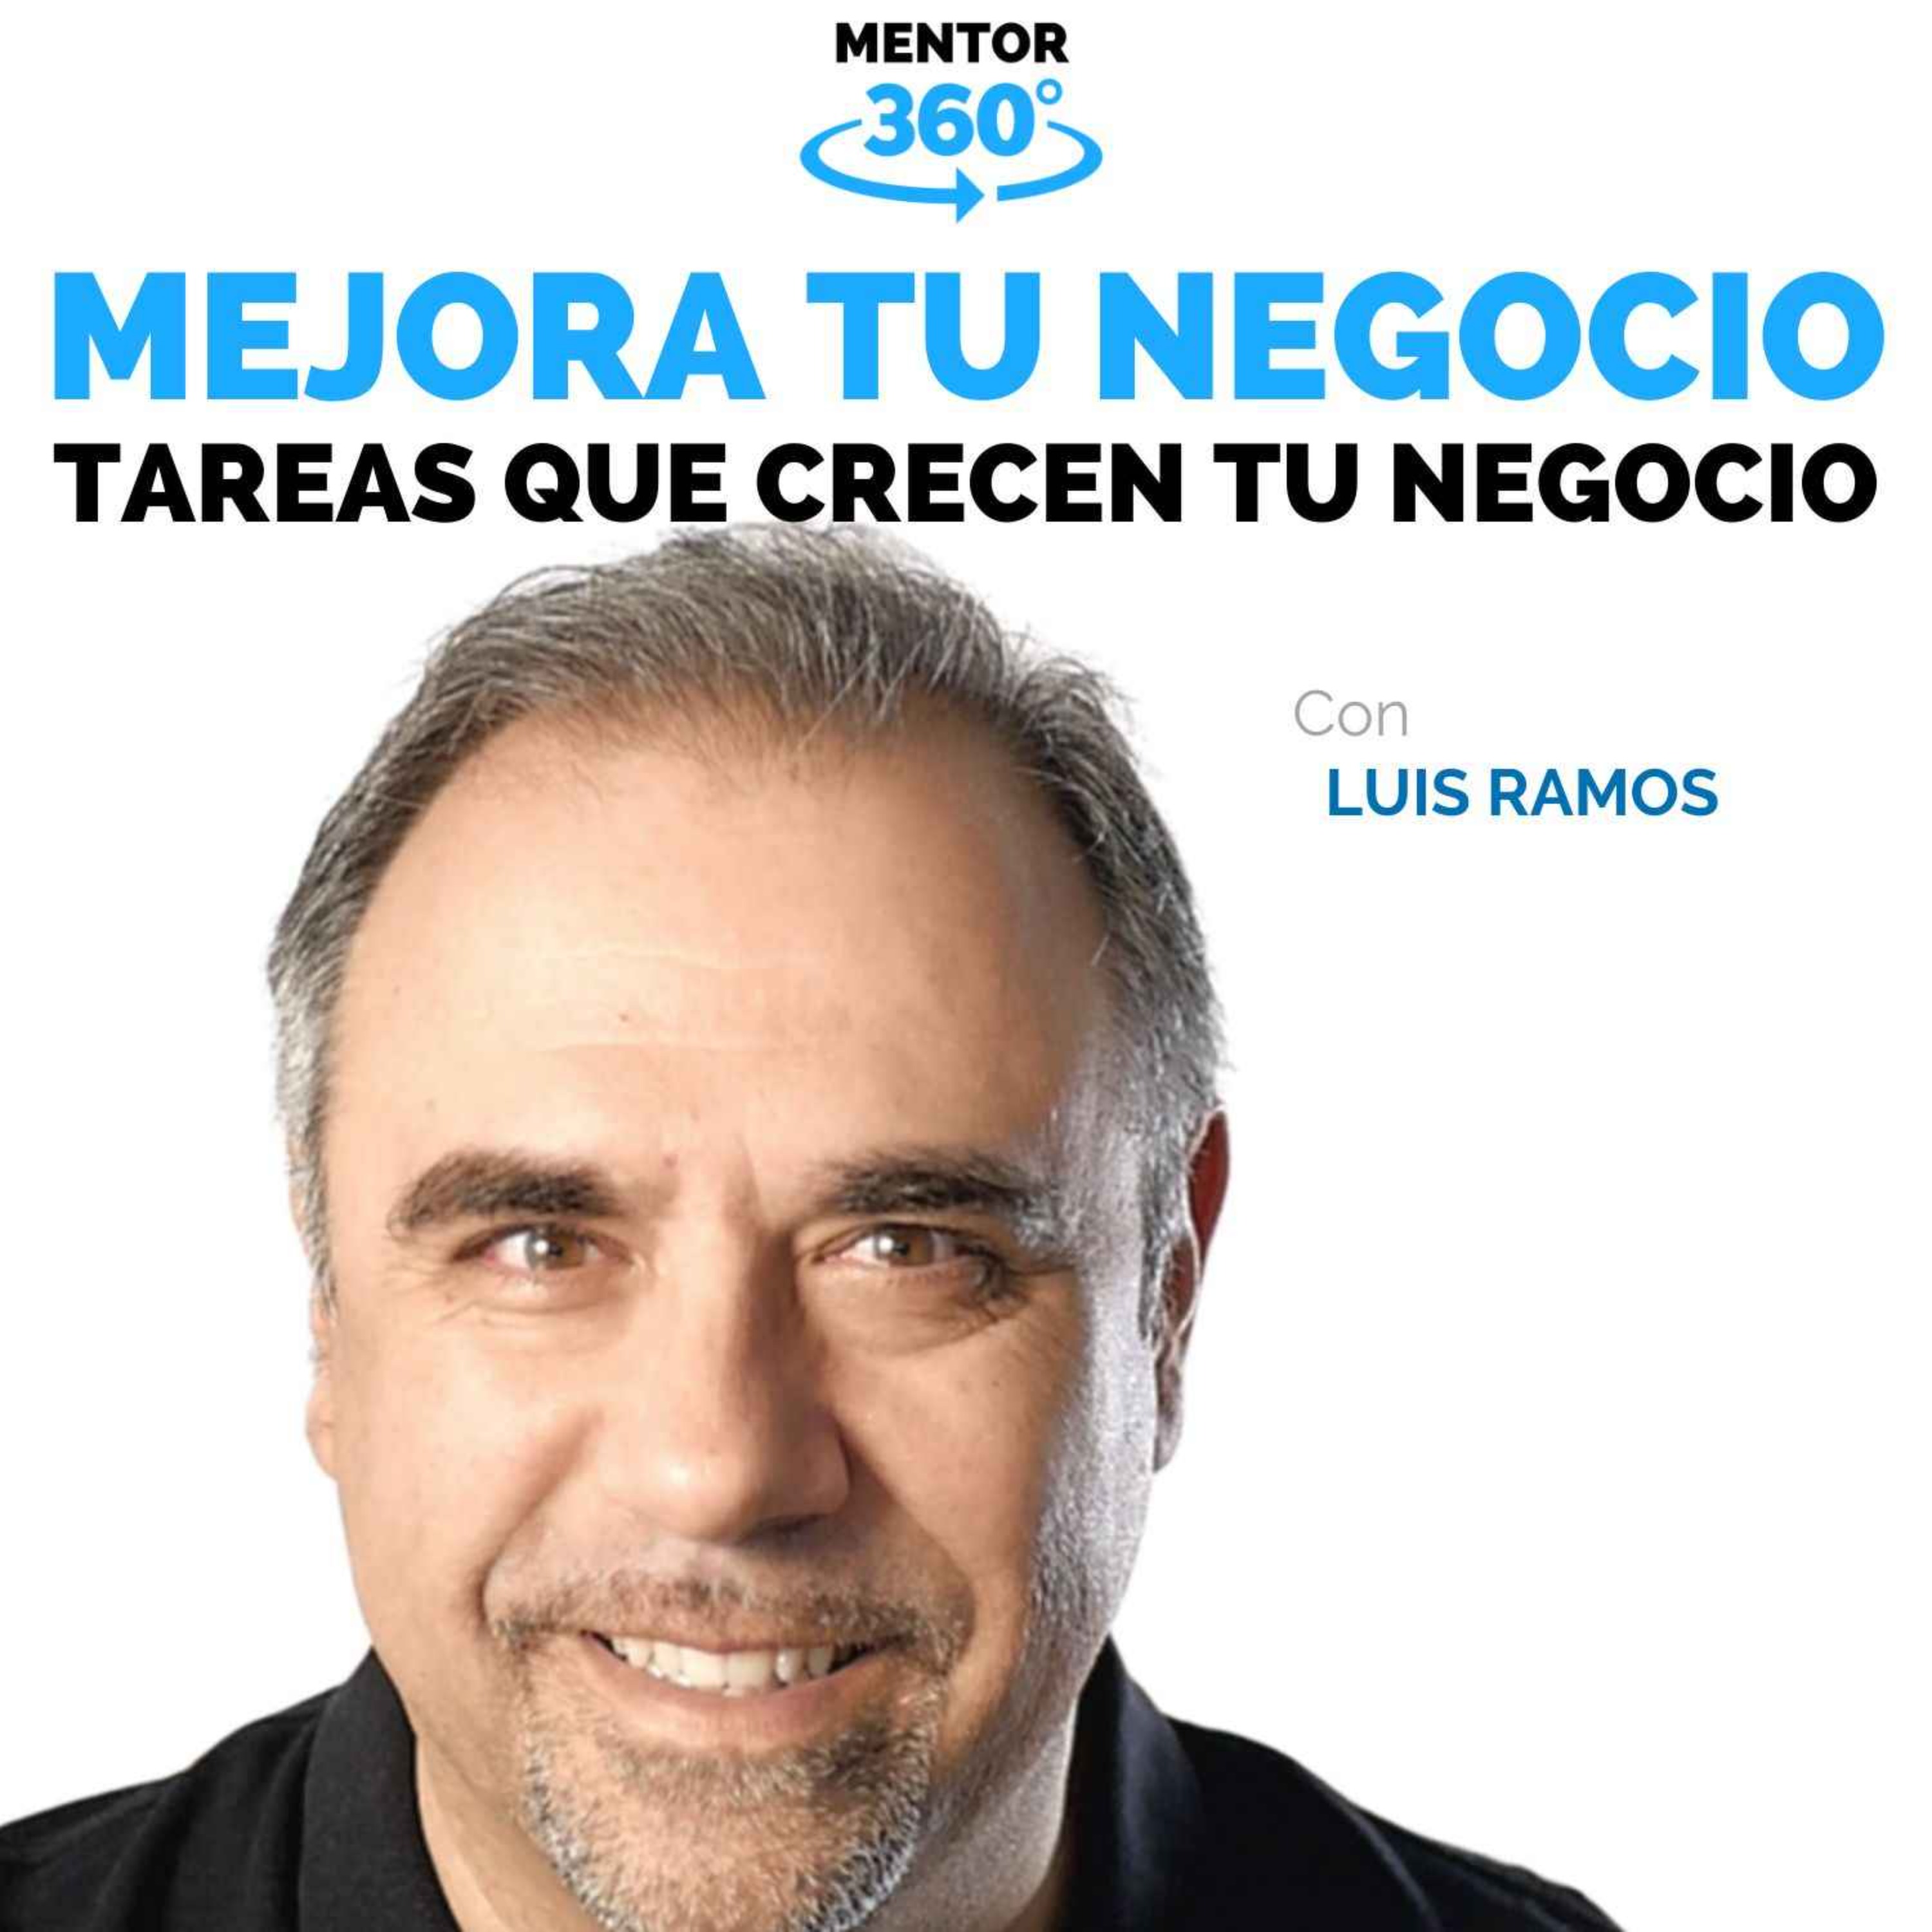 Las 5 Tareas Diarias que Hacen Crecer Tu Negocio - Luis Ramos - Mejora Tu Negocio - MENTOR360